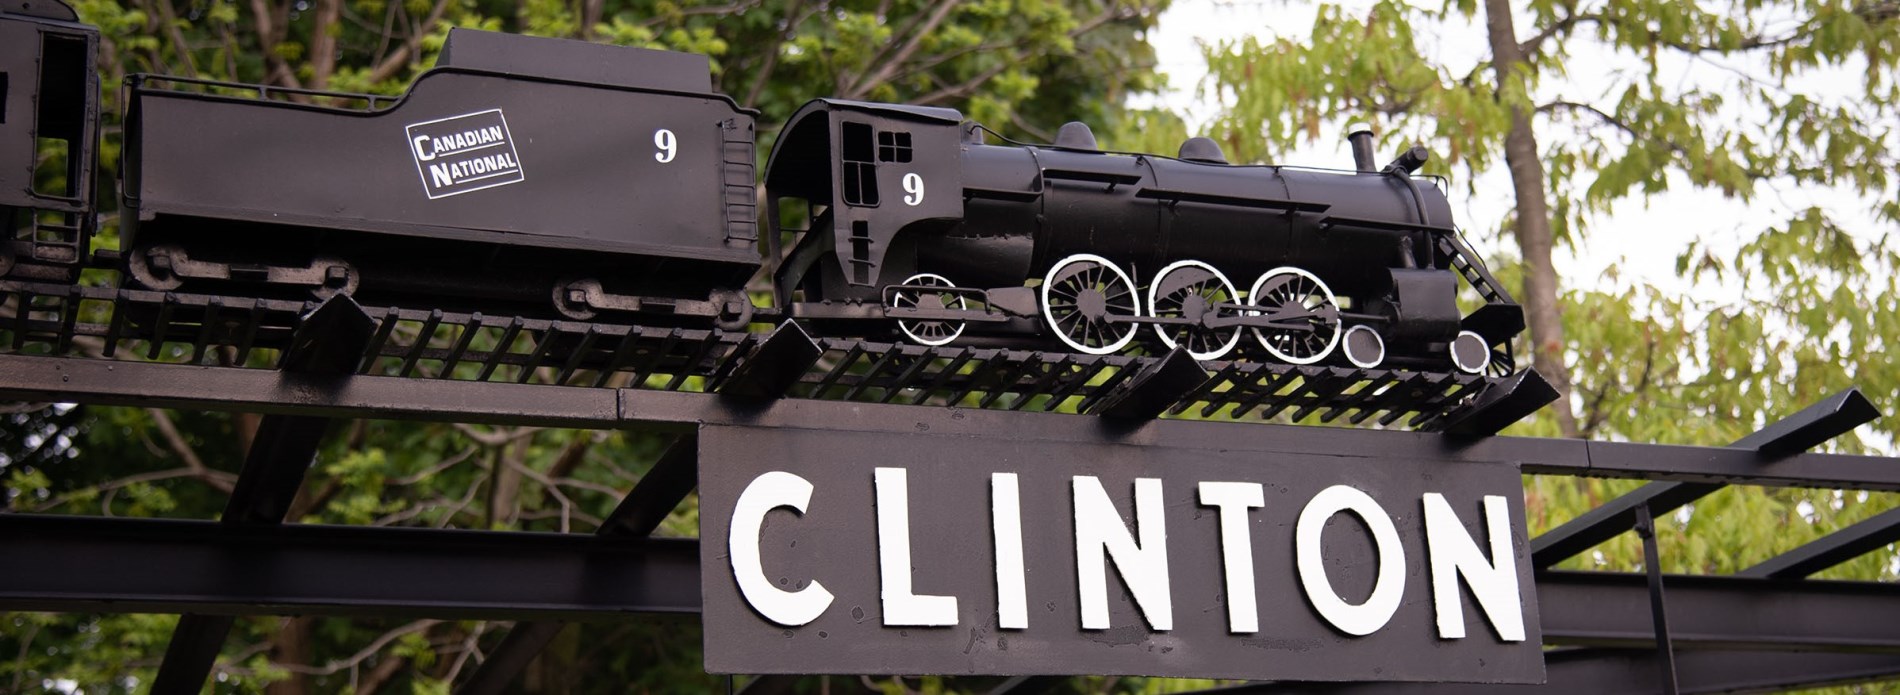 Clinton rail car statue